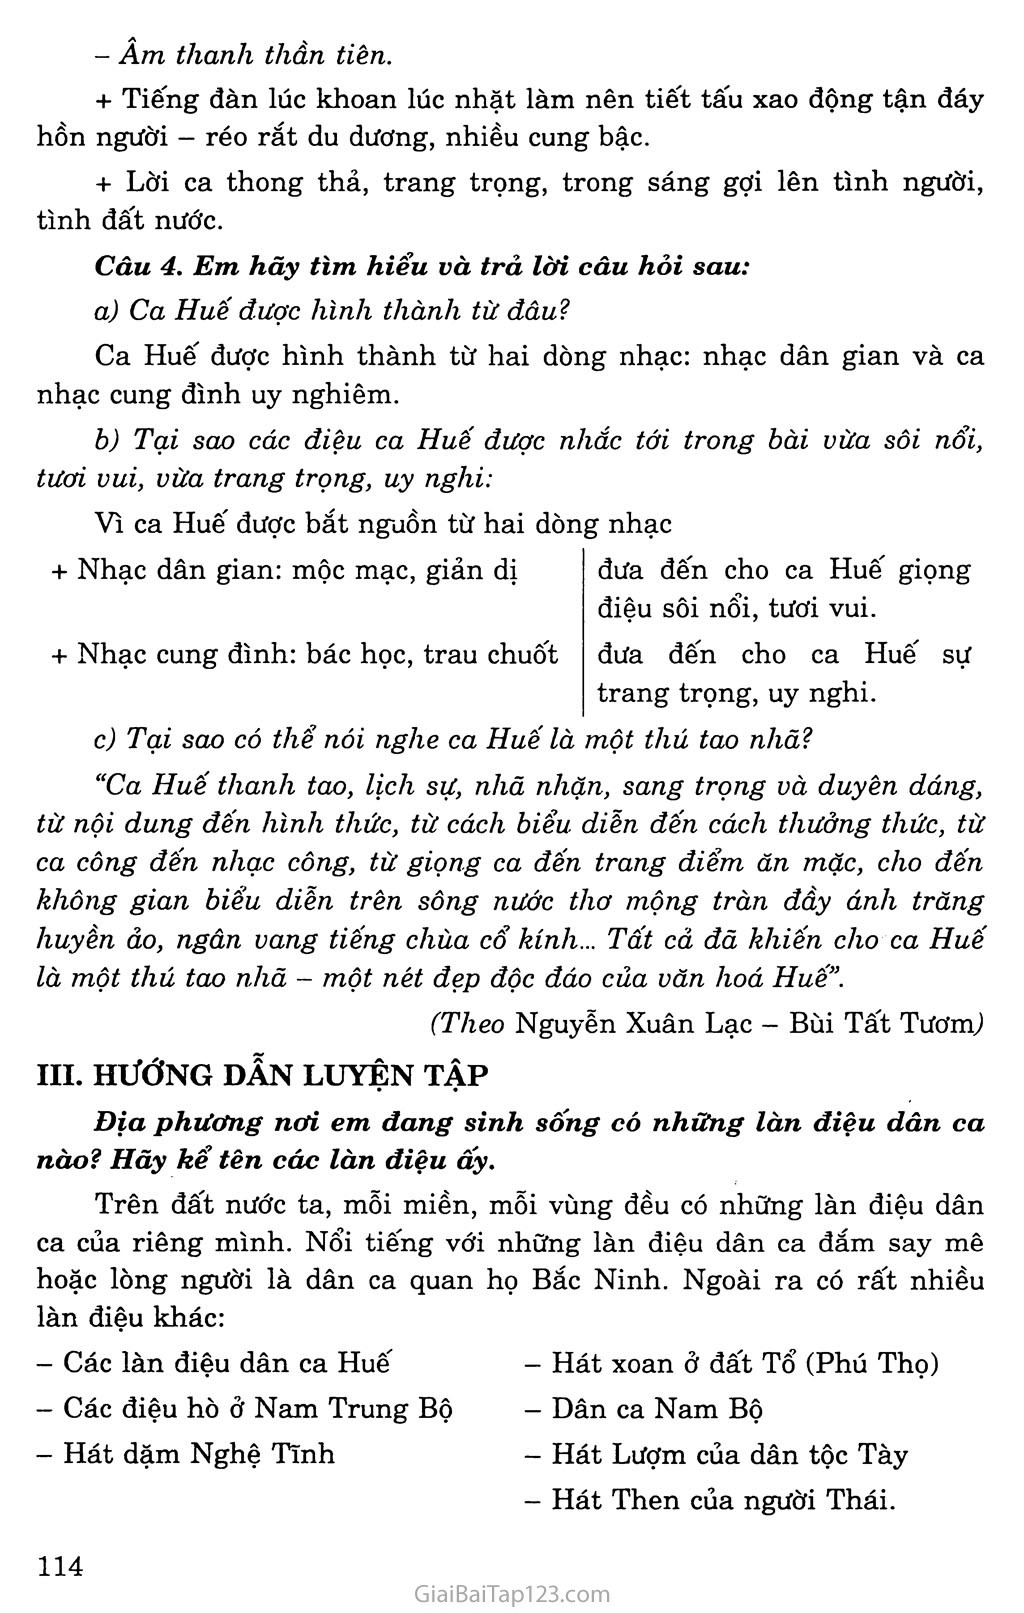 Ca Huế trên sông Hương trang 3